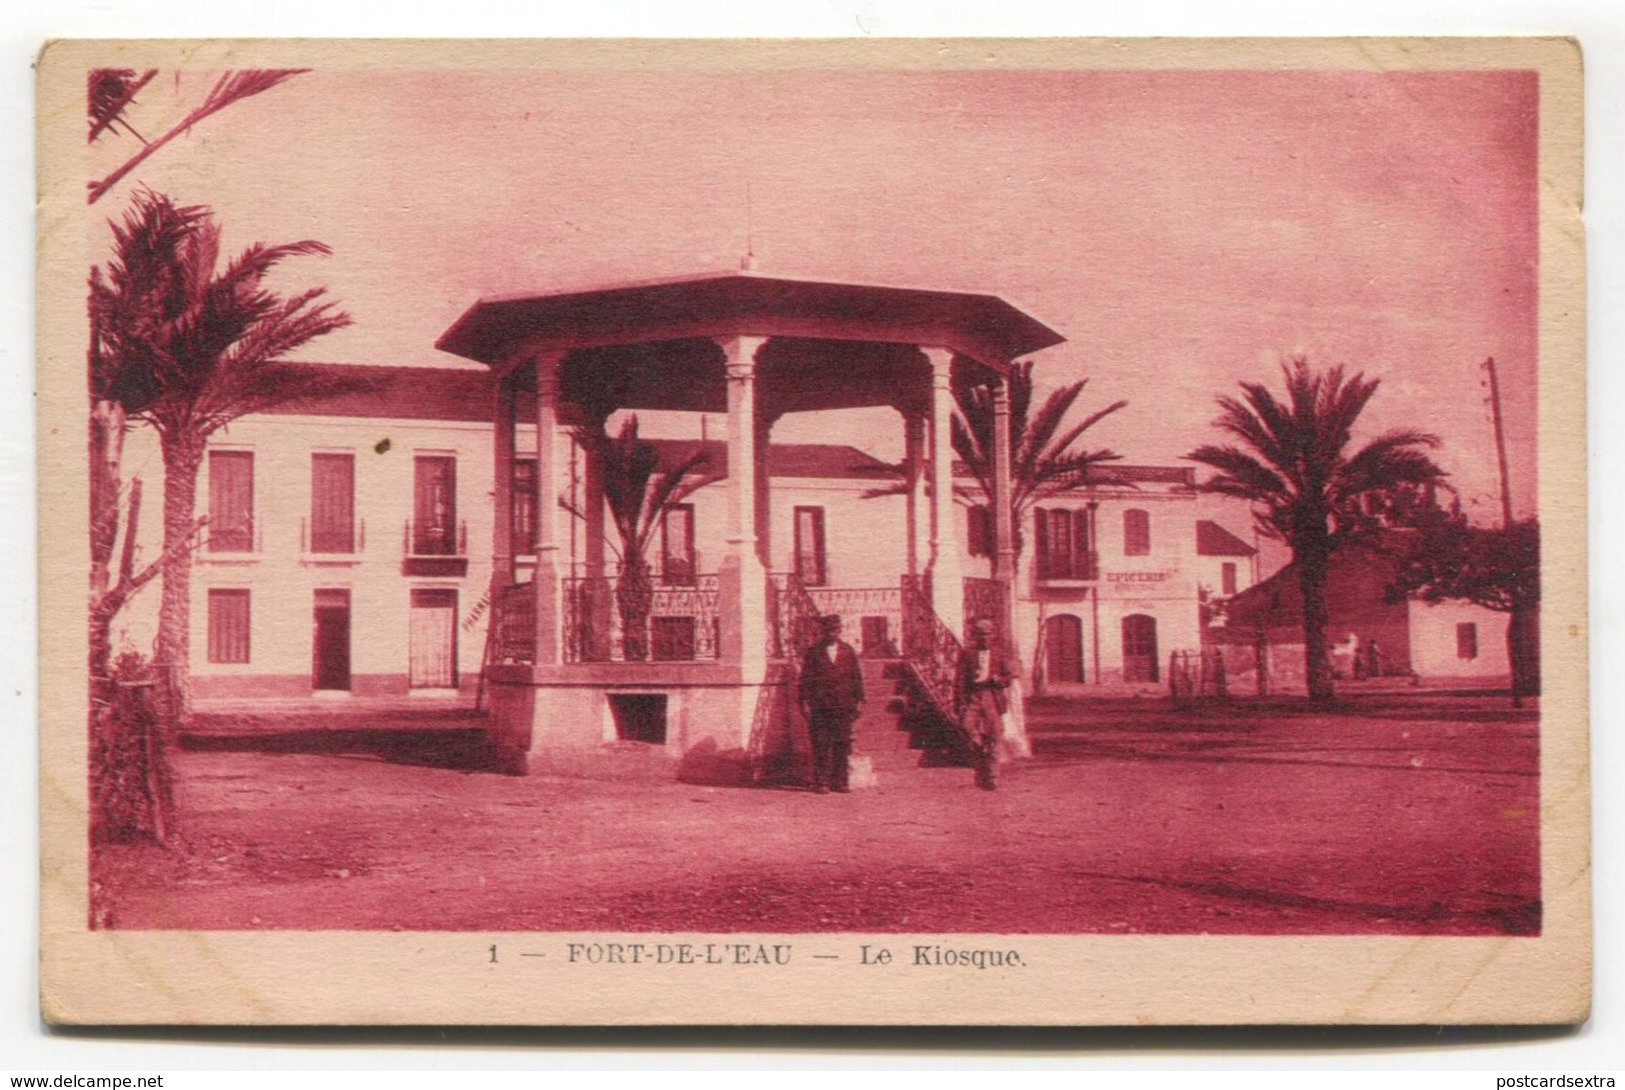 Algerie, Algeria - Fort-de-l'Eau, Alger, Algiers - Le Kiosque, Bandstand - Algiers